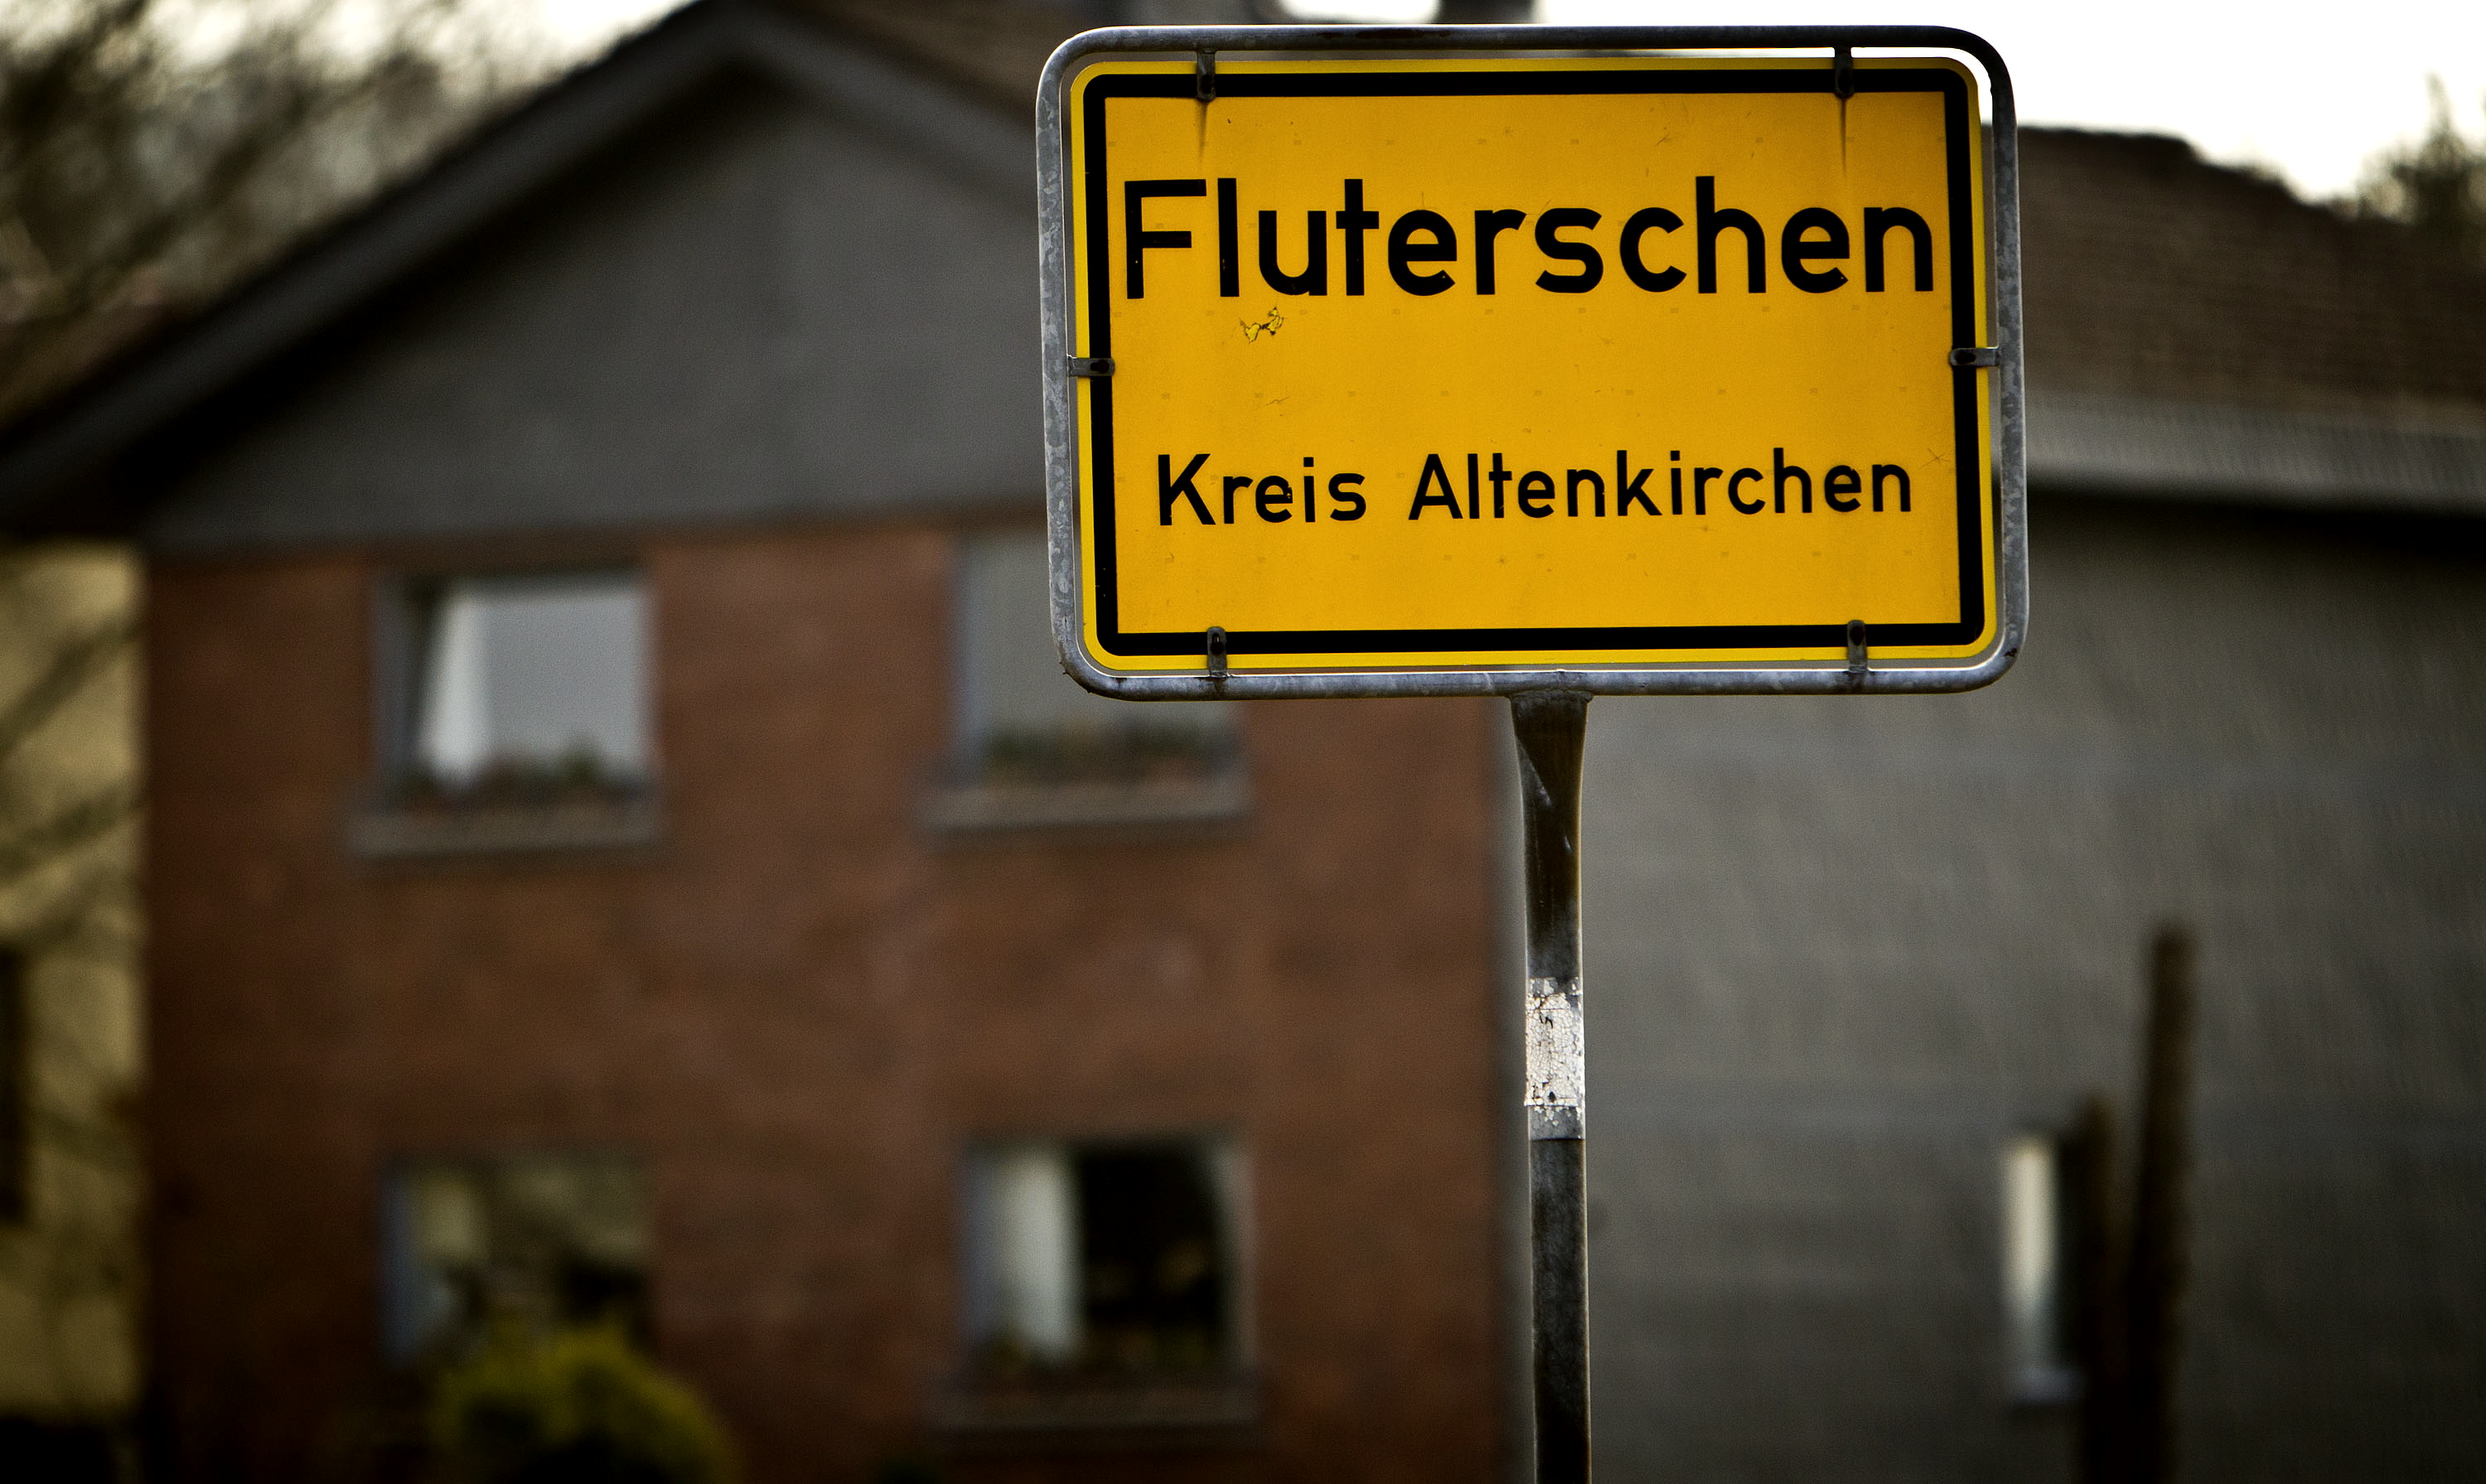 Byn Fluterschen skakas nu av  övergreppen och kallar honom för Tysklands Josef Fritzl.